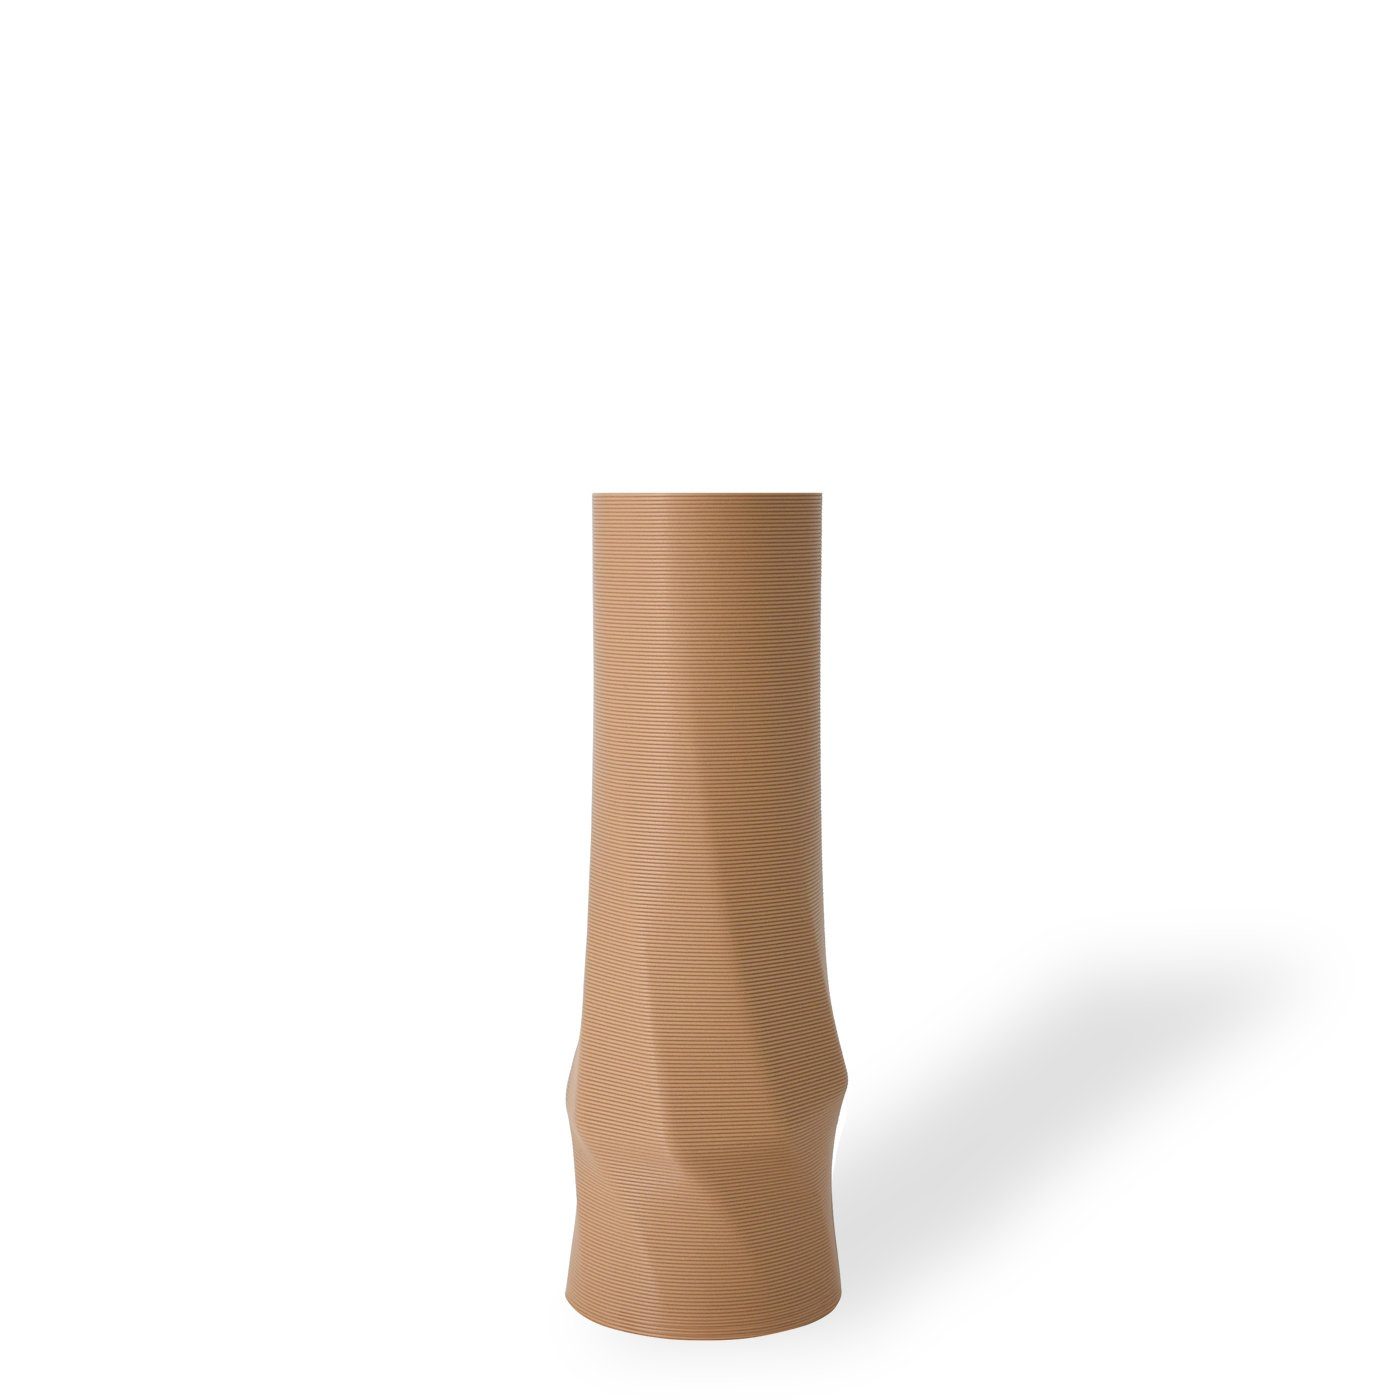 Shapes - Decorations Dekovase the vase - circle (basic), 3D Vasen, viele Farben, 100% 3D-Druck (Einzelmodell, 1 Vase), Wasserdicht; Leichte Struktur innerhalb des Materials (Rillung) Erdnussbraun